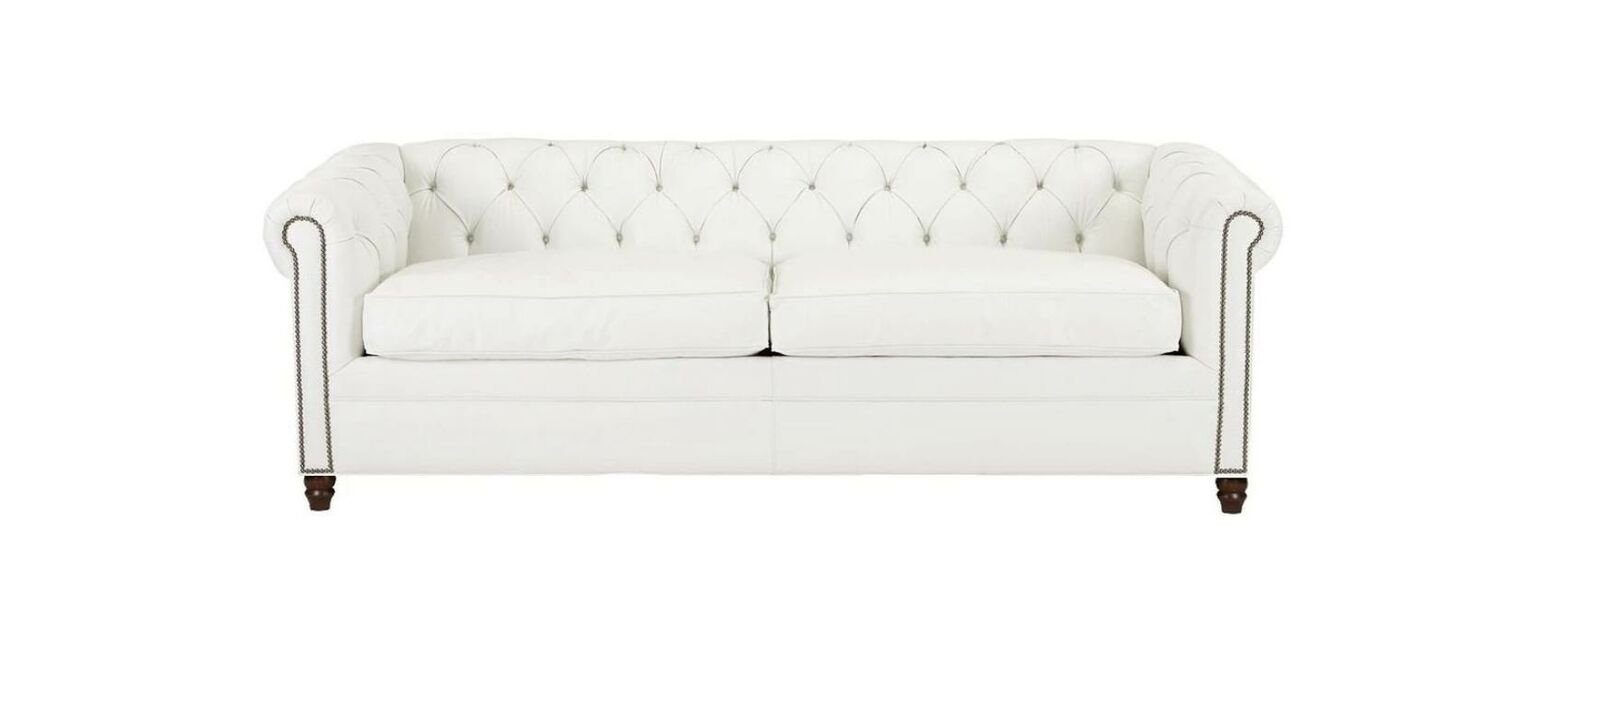 Europe JVmoebel Leder, Modern Dreisitzer Design Chesterfield Couchen in Sofa Weiß Made